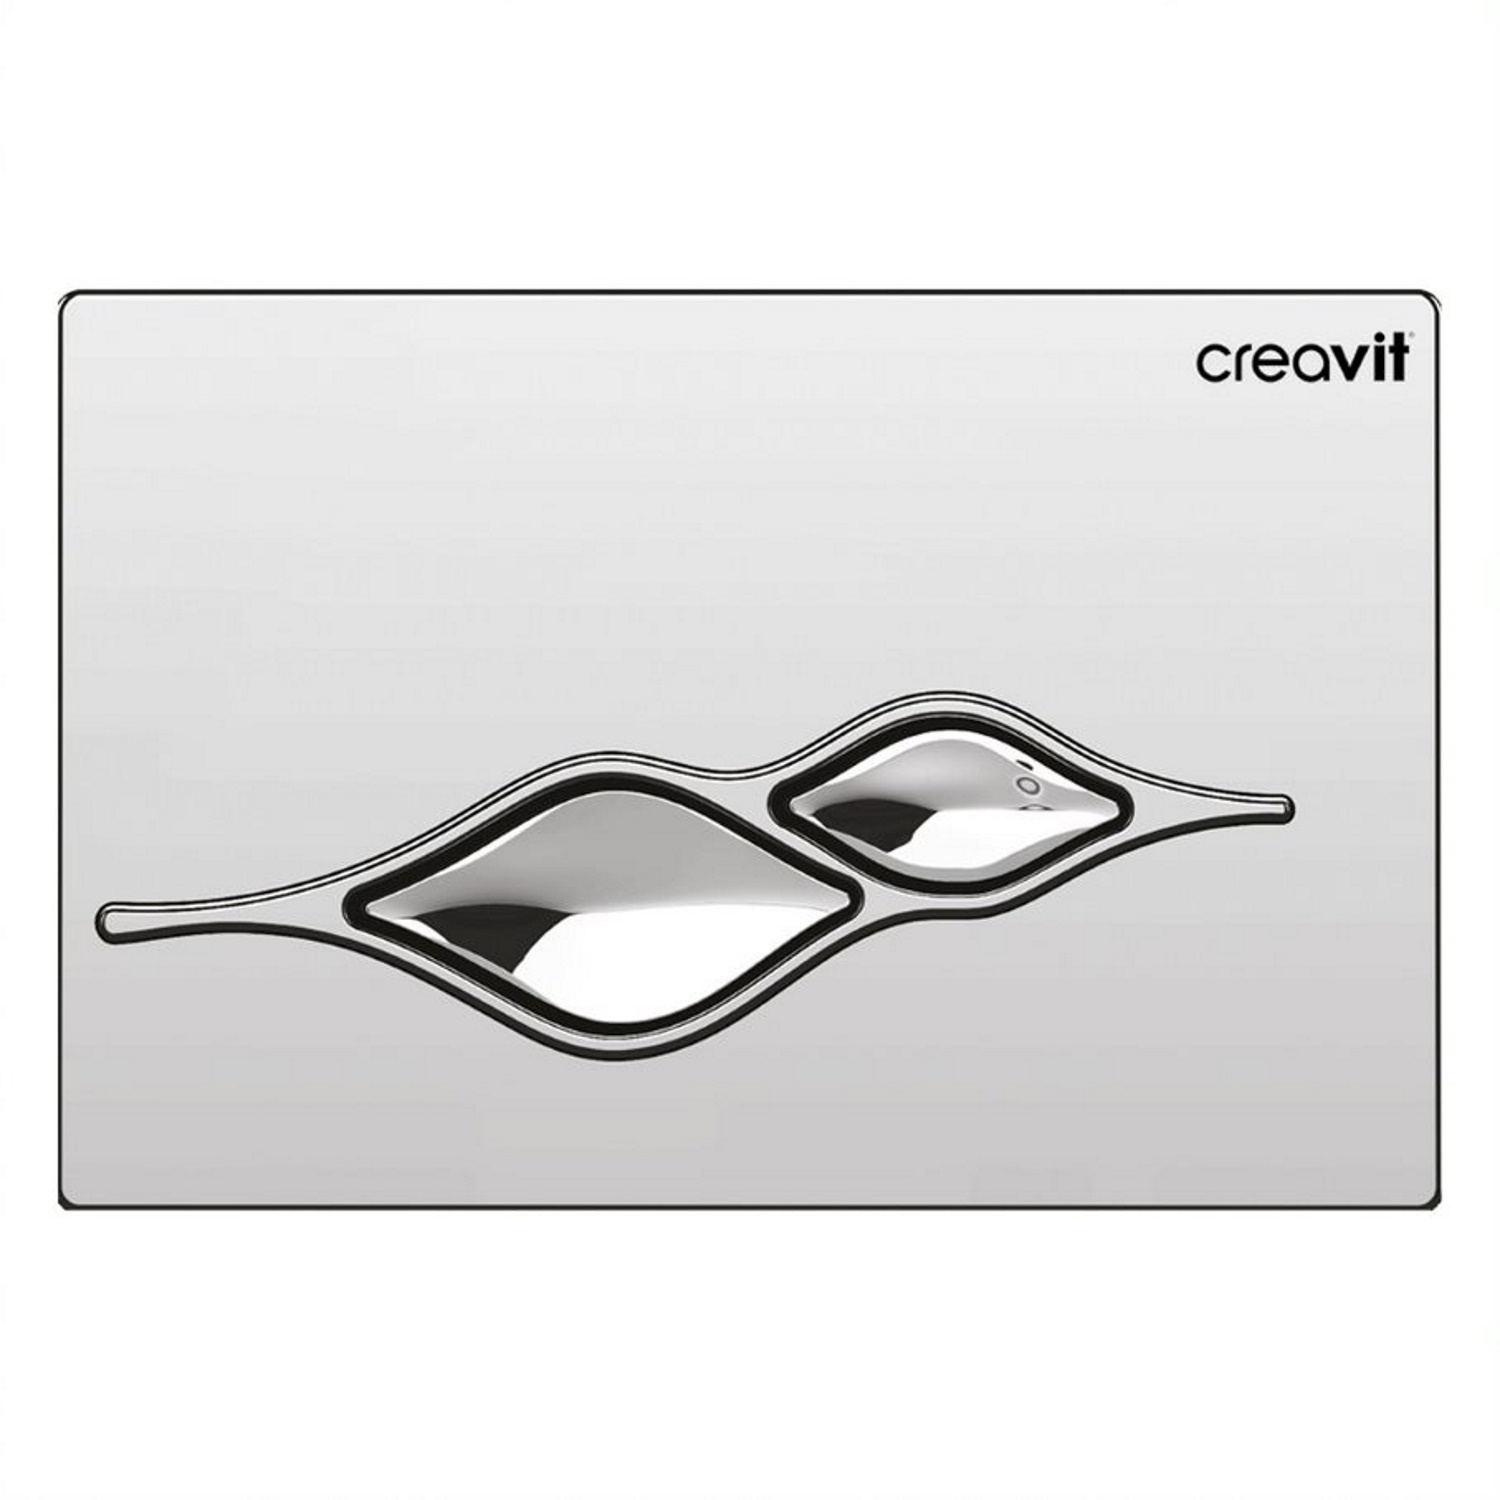 Drukplaat Creavit Ufo TBV Creavit GR5003 Chroom Creavit